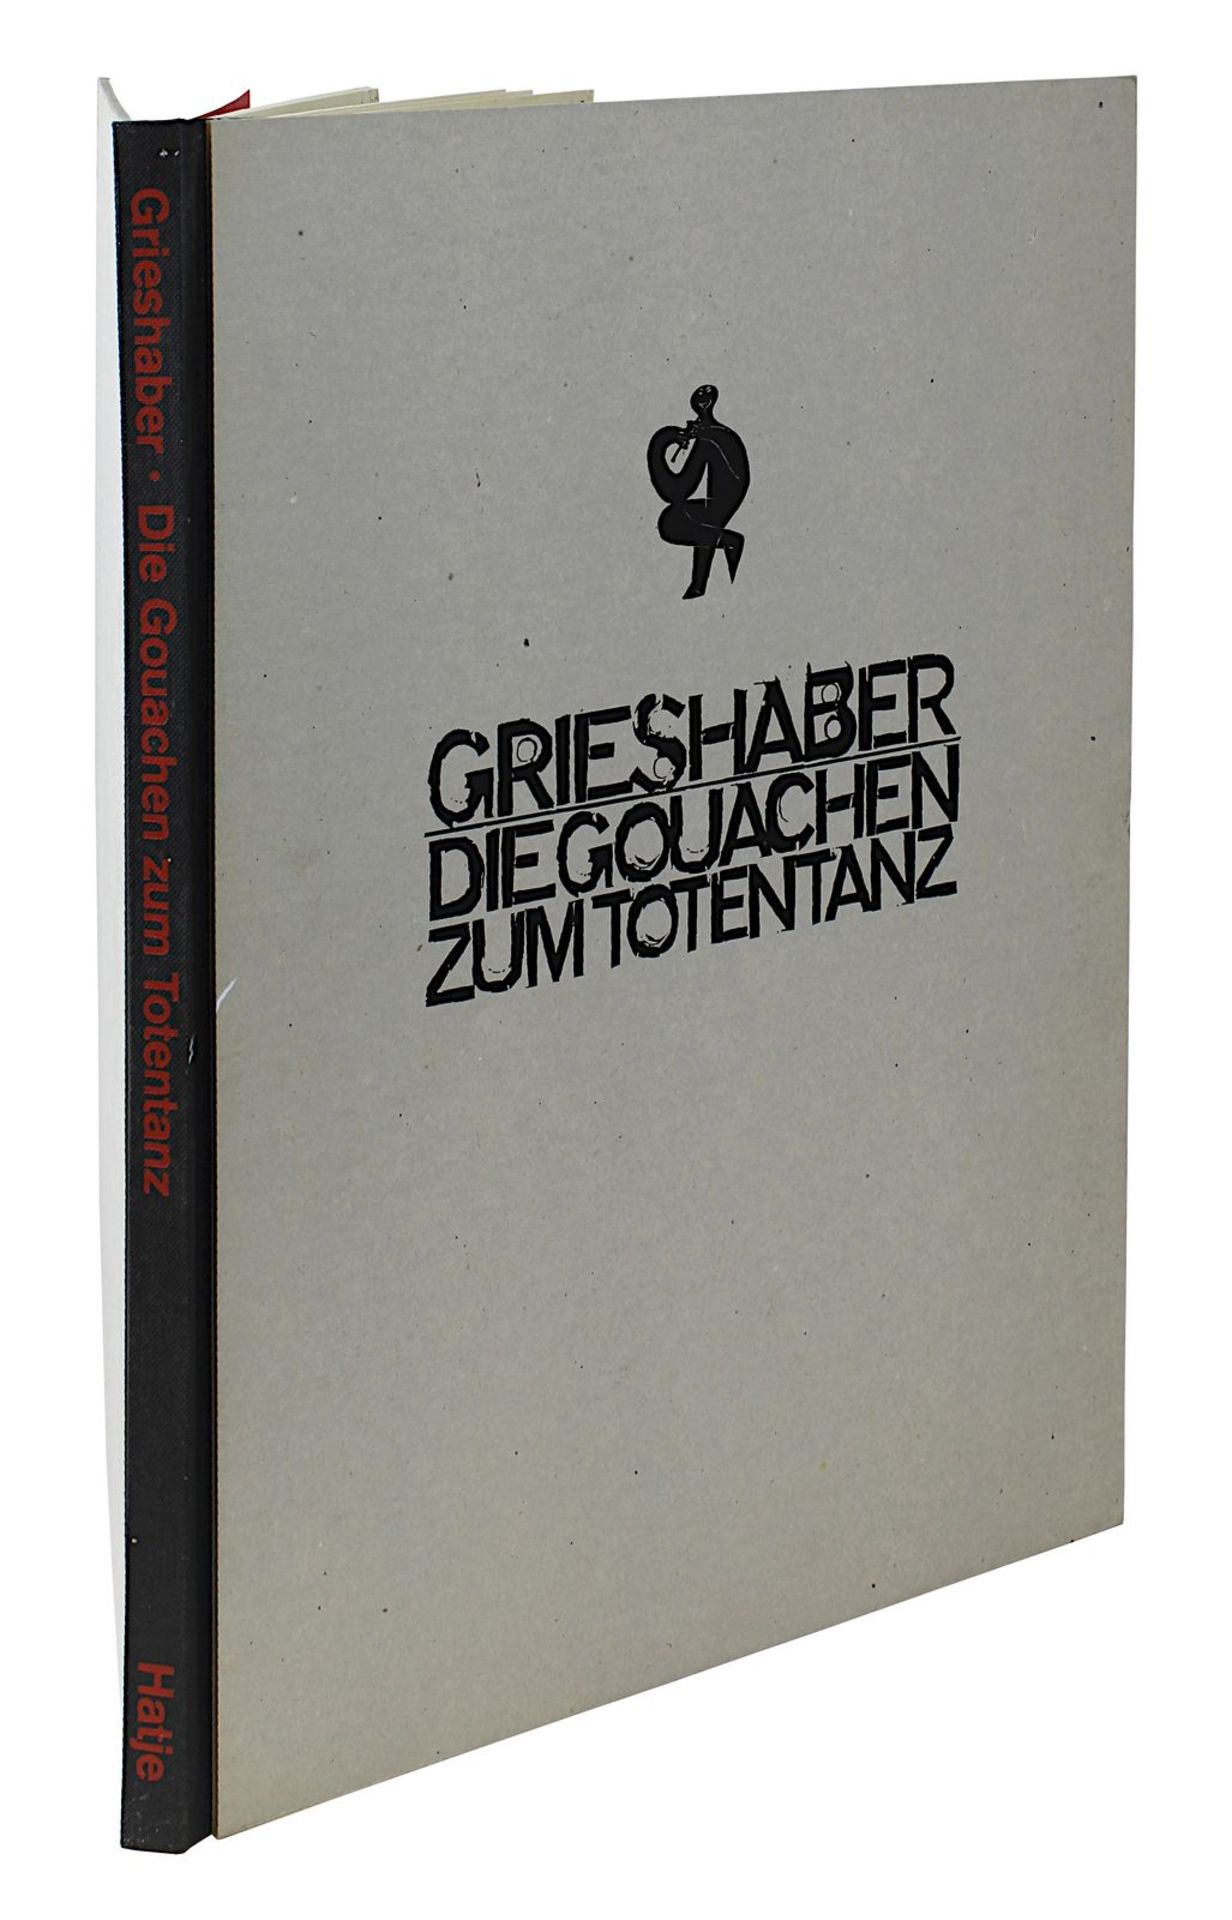 Grieshaber, HAP (Rot an der Rot 1909 - 1981 Eningen unter Achalm), "Grieshaber - Die Gouachen zum